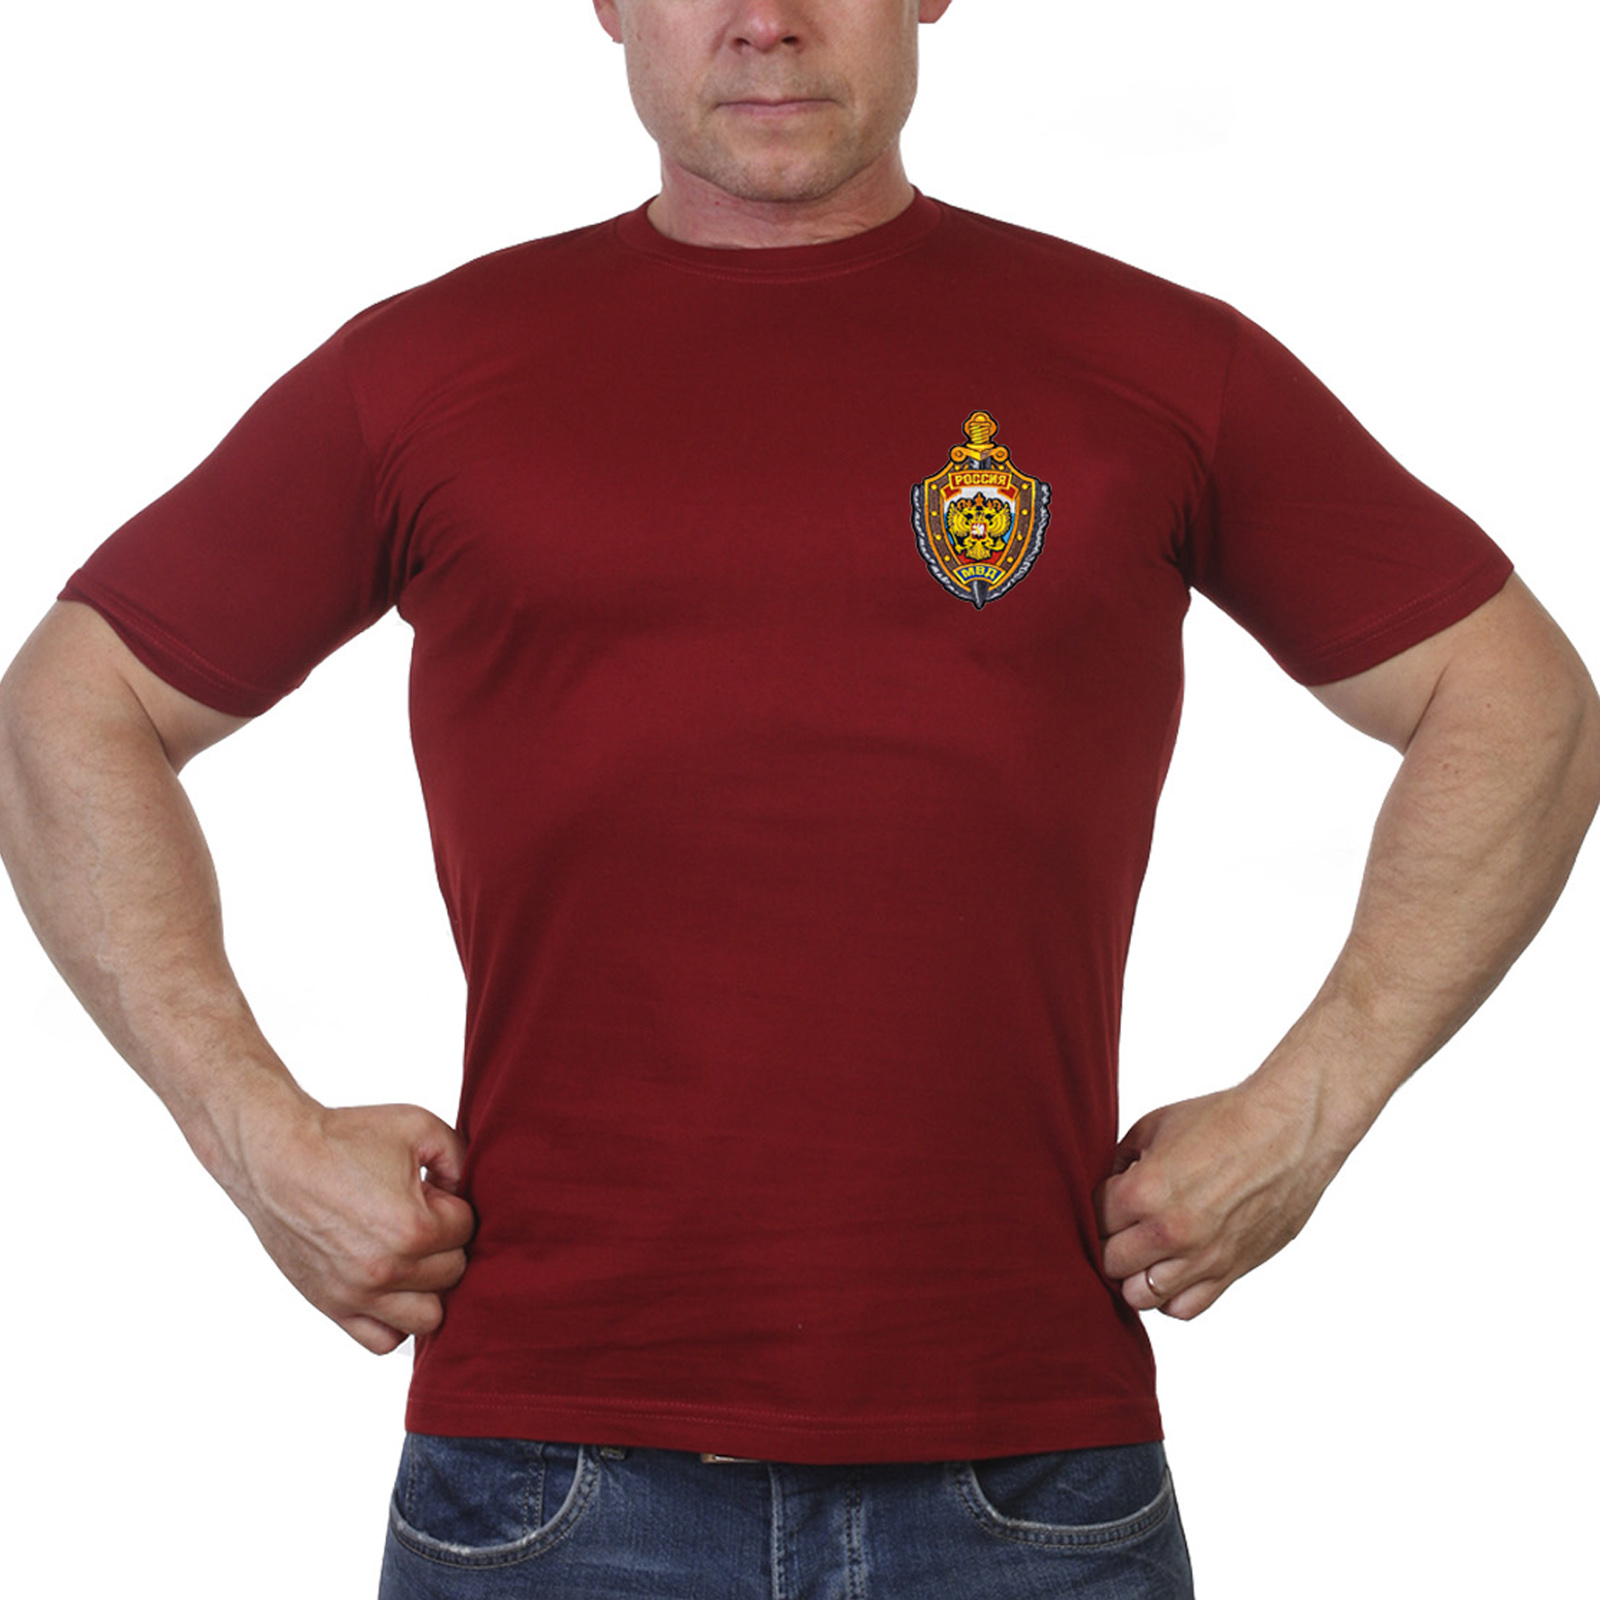 Купить футболку МВД России